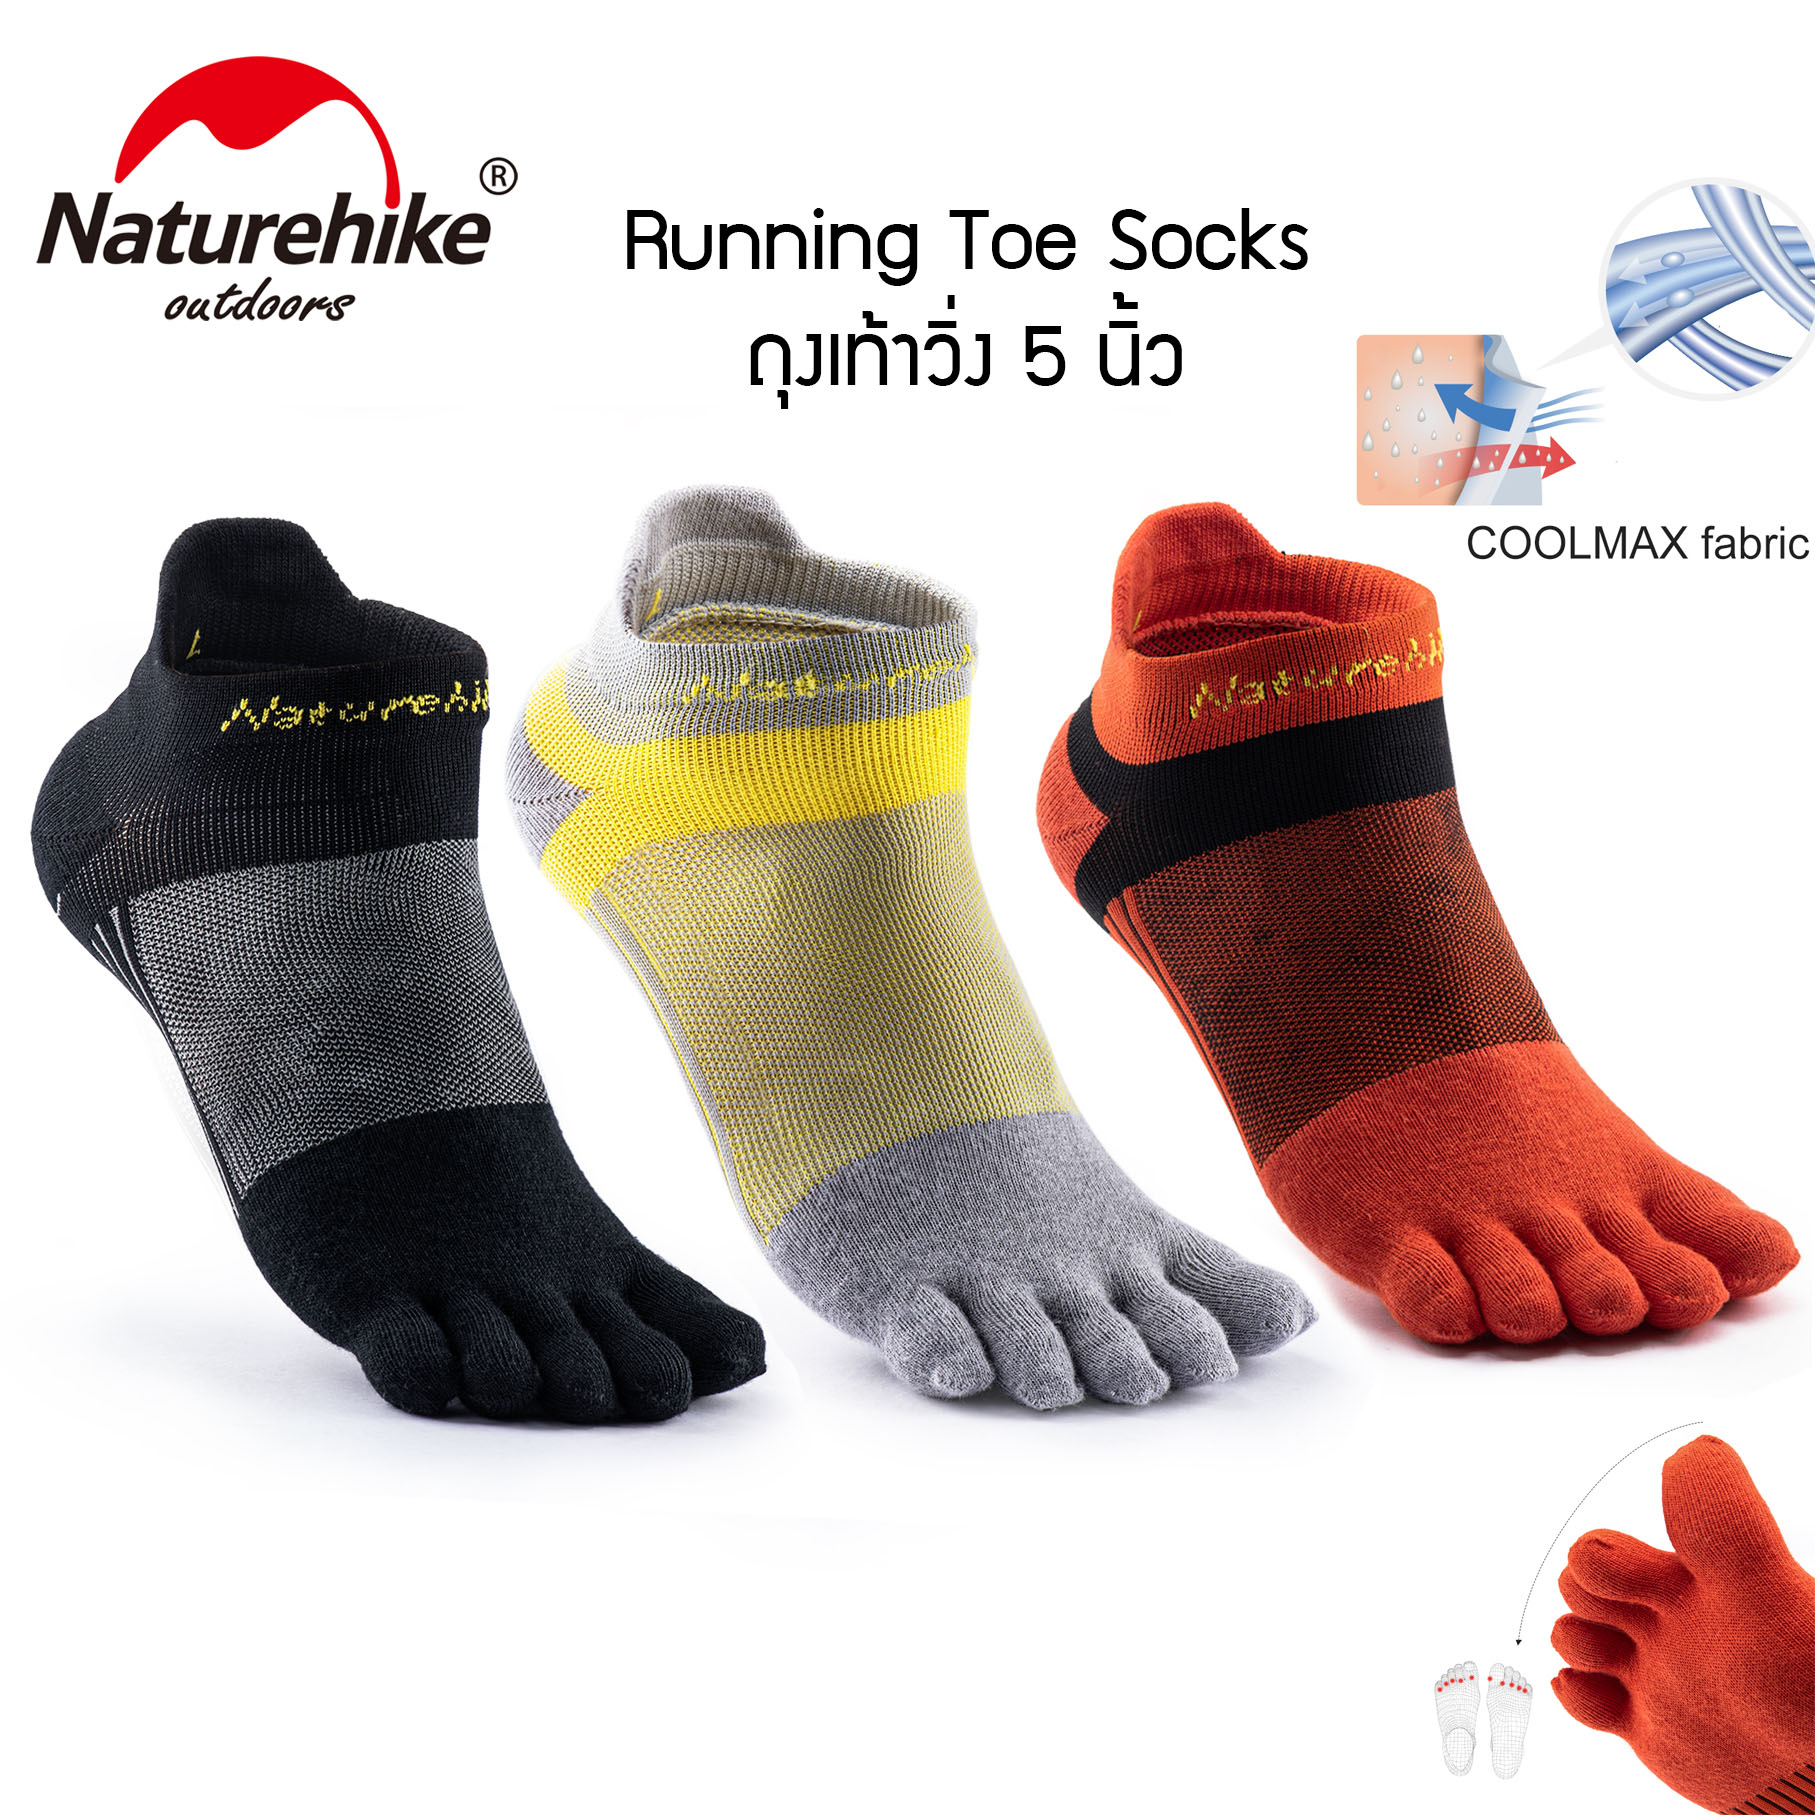 5 toe running socks